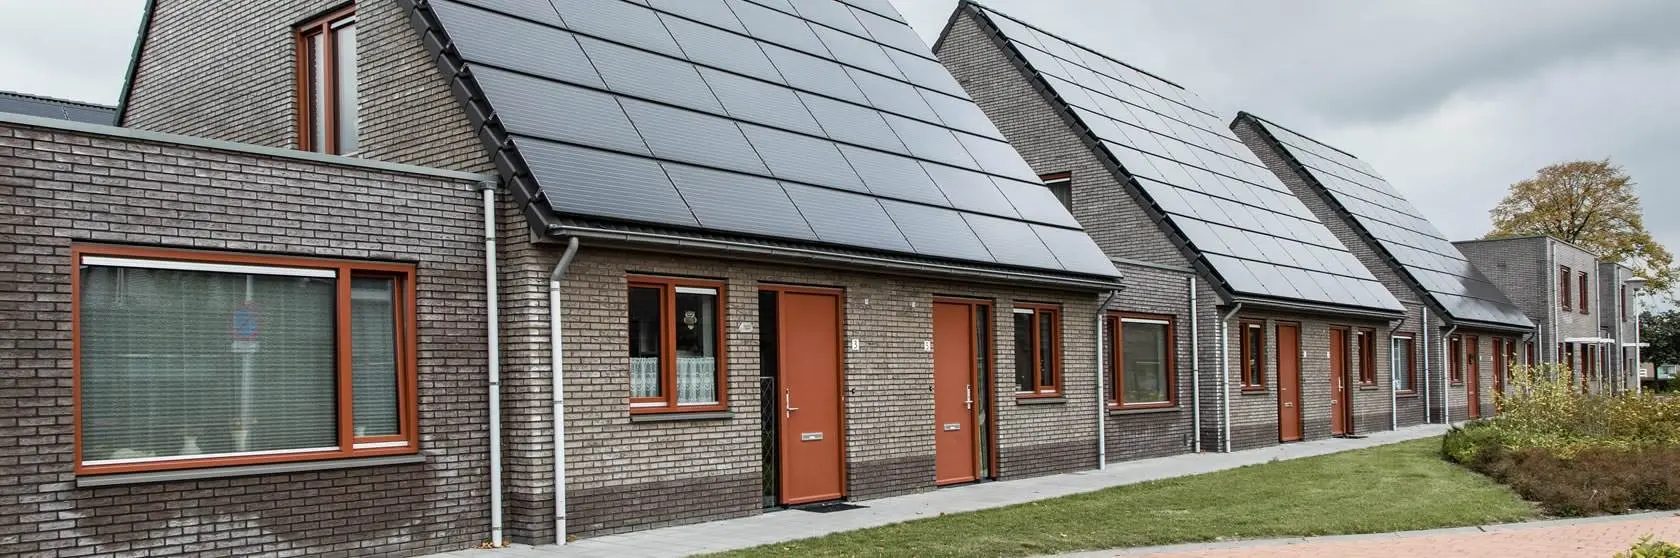 Duurzaamheidsconcepten van installatiebedrijf Mampaey actief in Den Bommel en omgeving